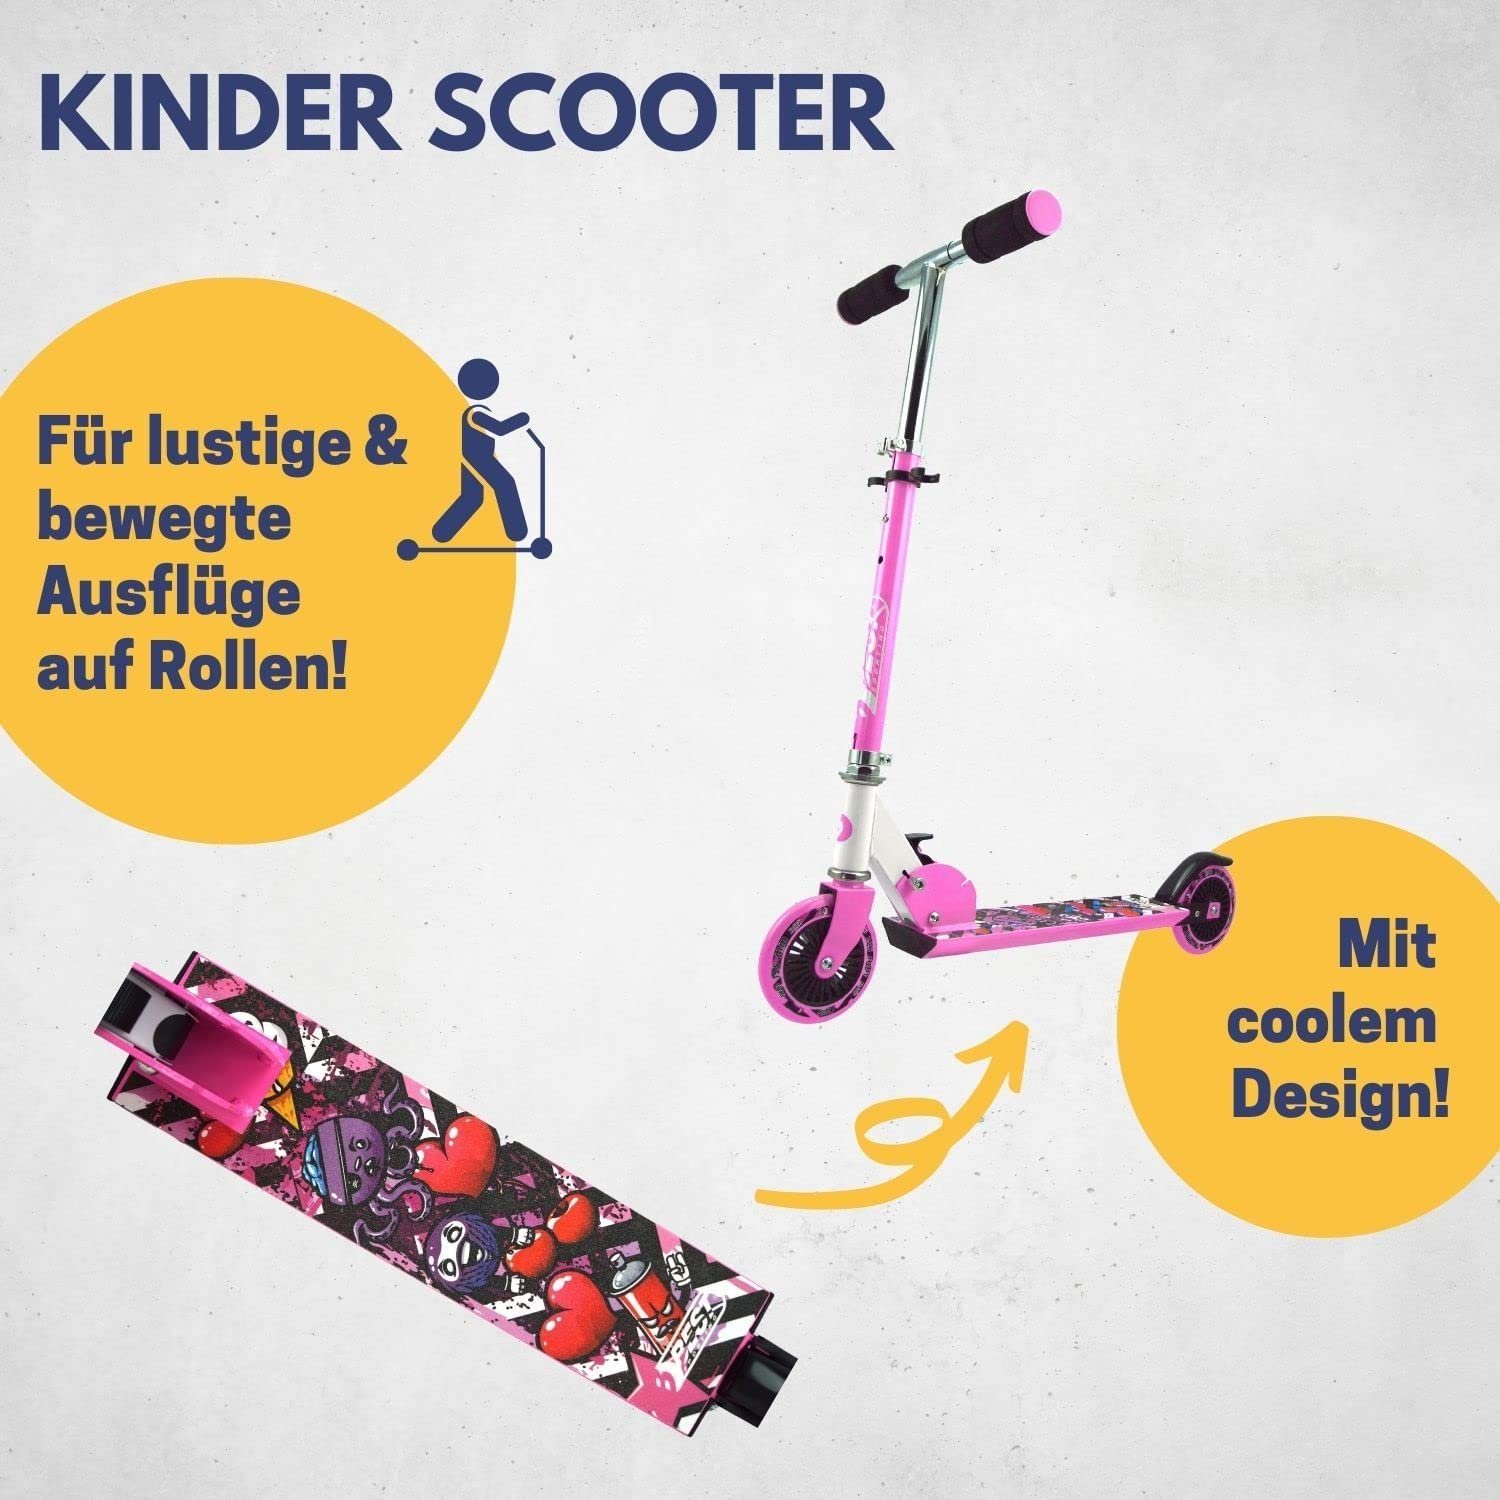 in pink-weiß Best - Tretroller pink-weiß, City Cityroller Roller Sporting für Kinder klappbarer -